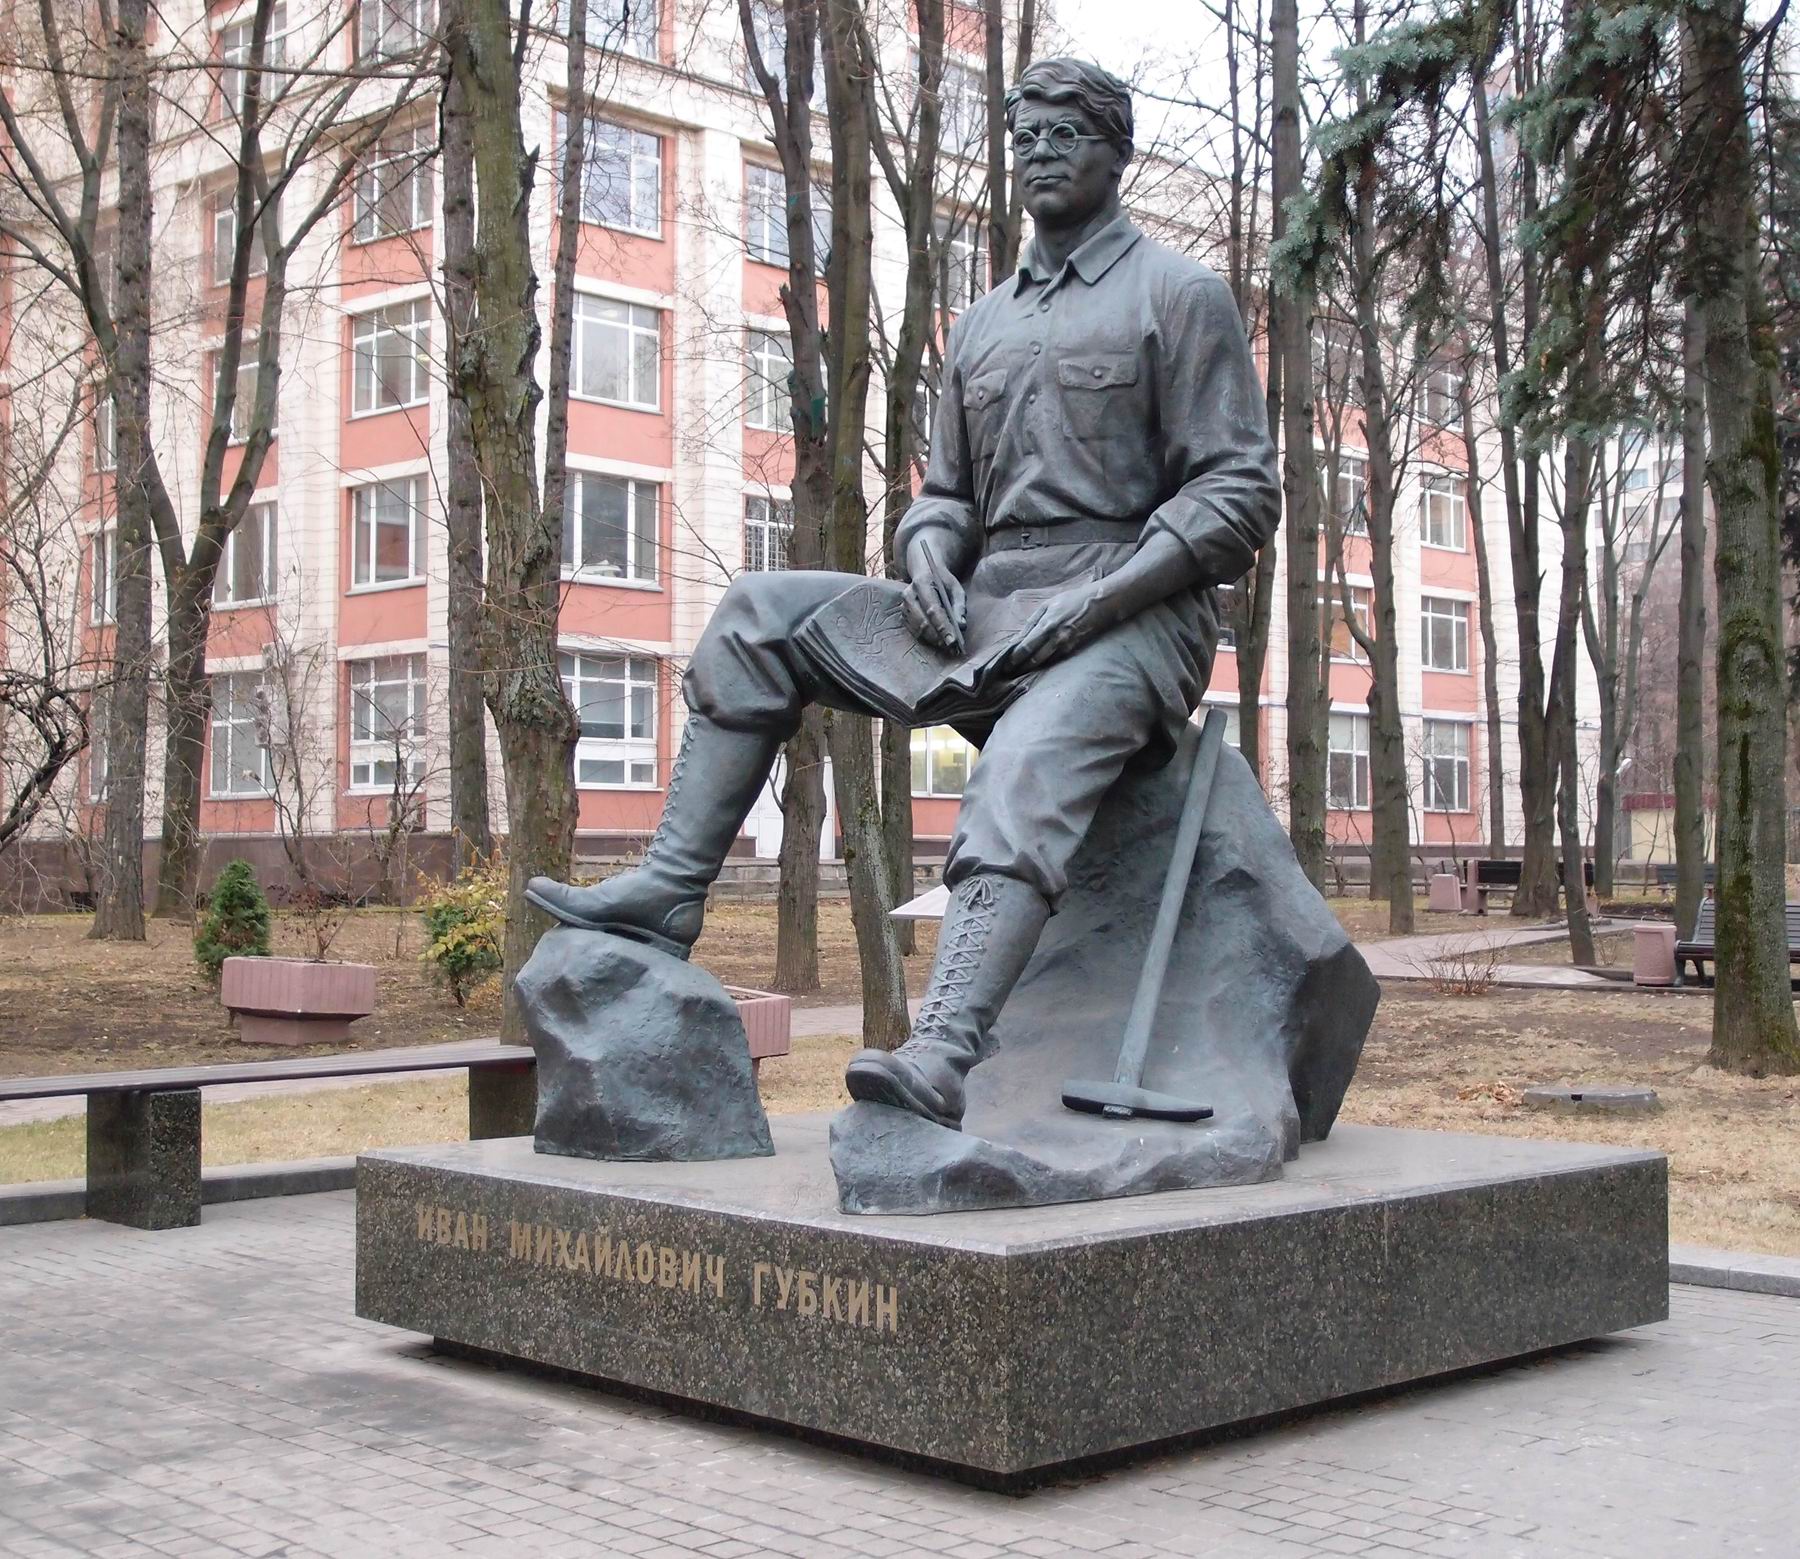 Памятник Губкину И.М. (1871–1939), ск. А.Н.Ковальчук, арх. М.В.Корси, на Ленинском проспекте, открыт в 2011.